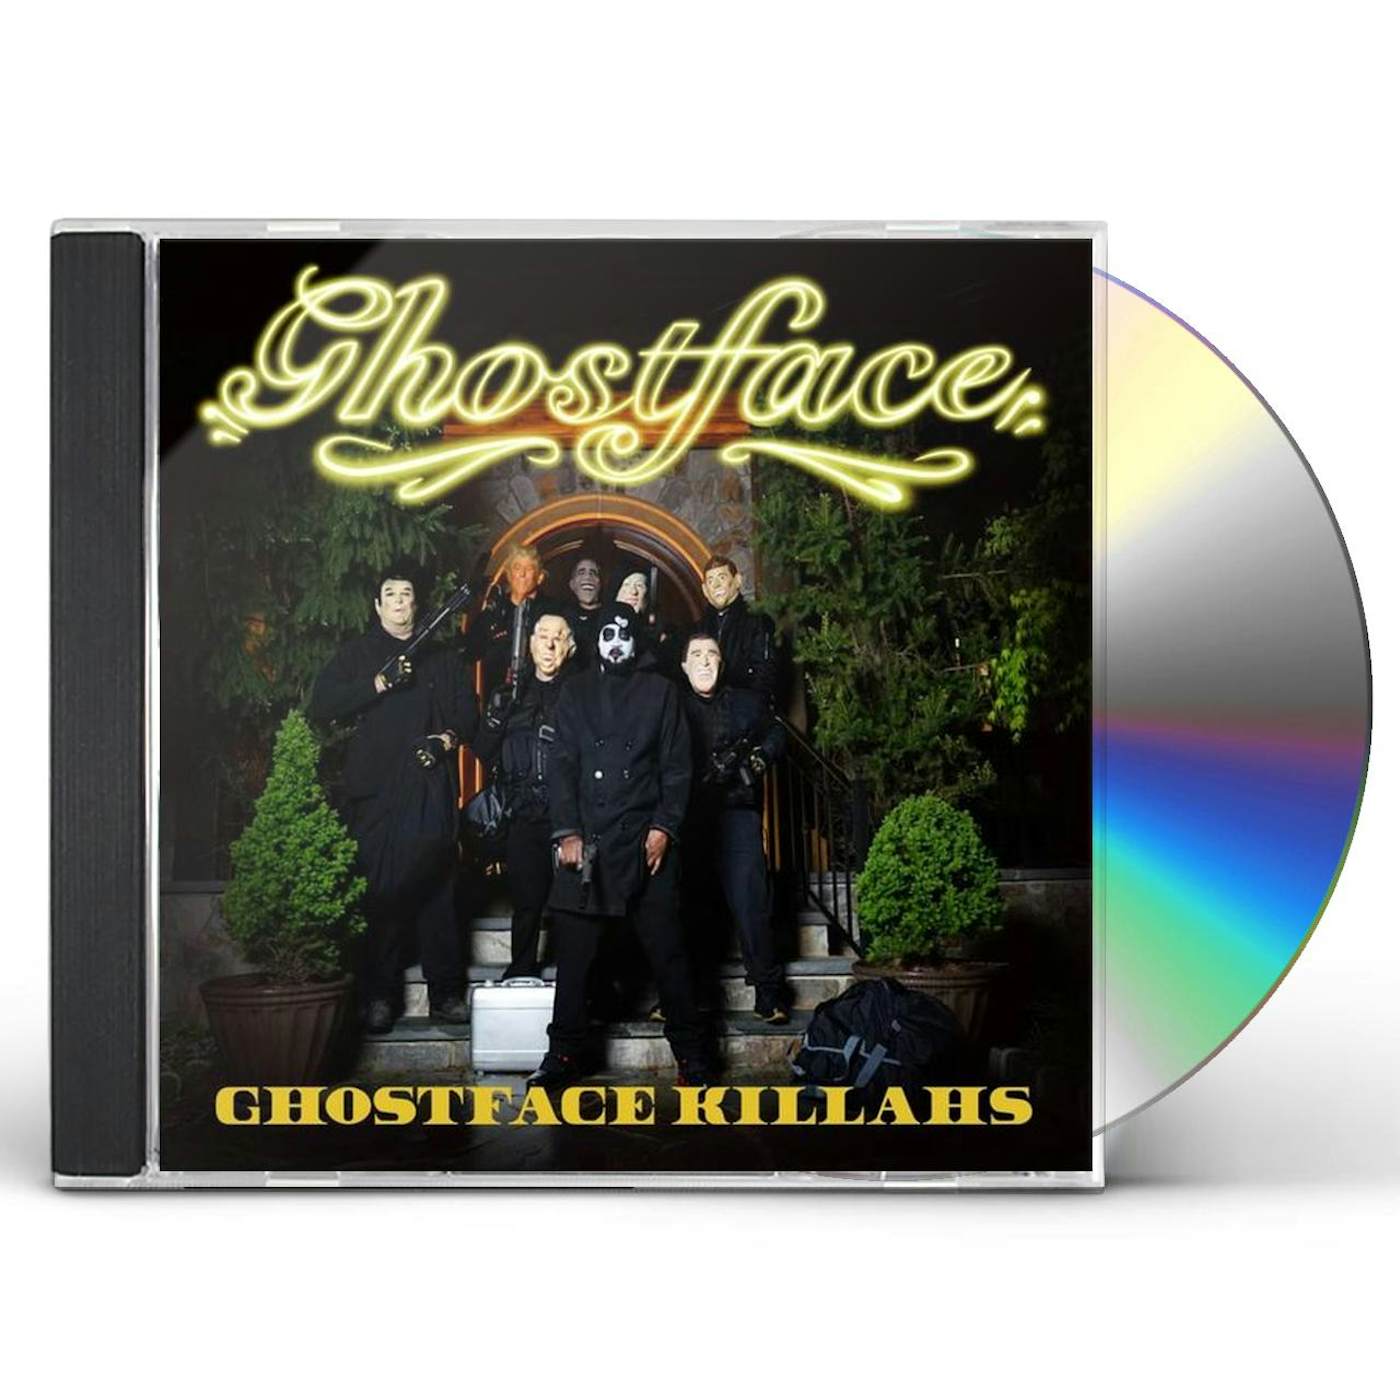 GHOSTFACE KILLAHS CD